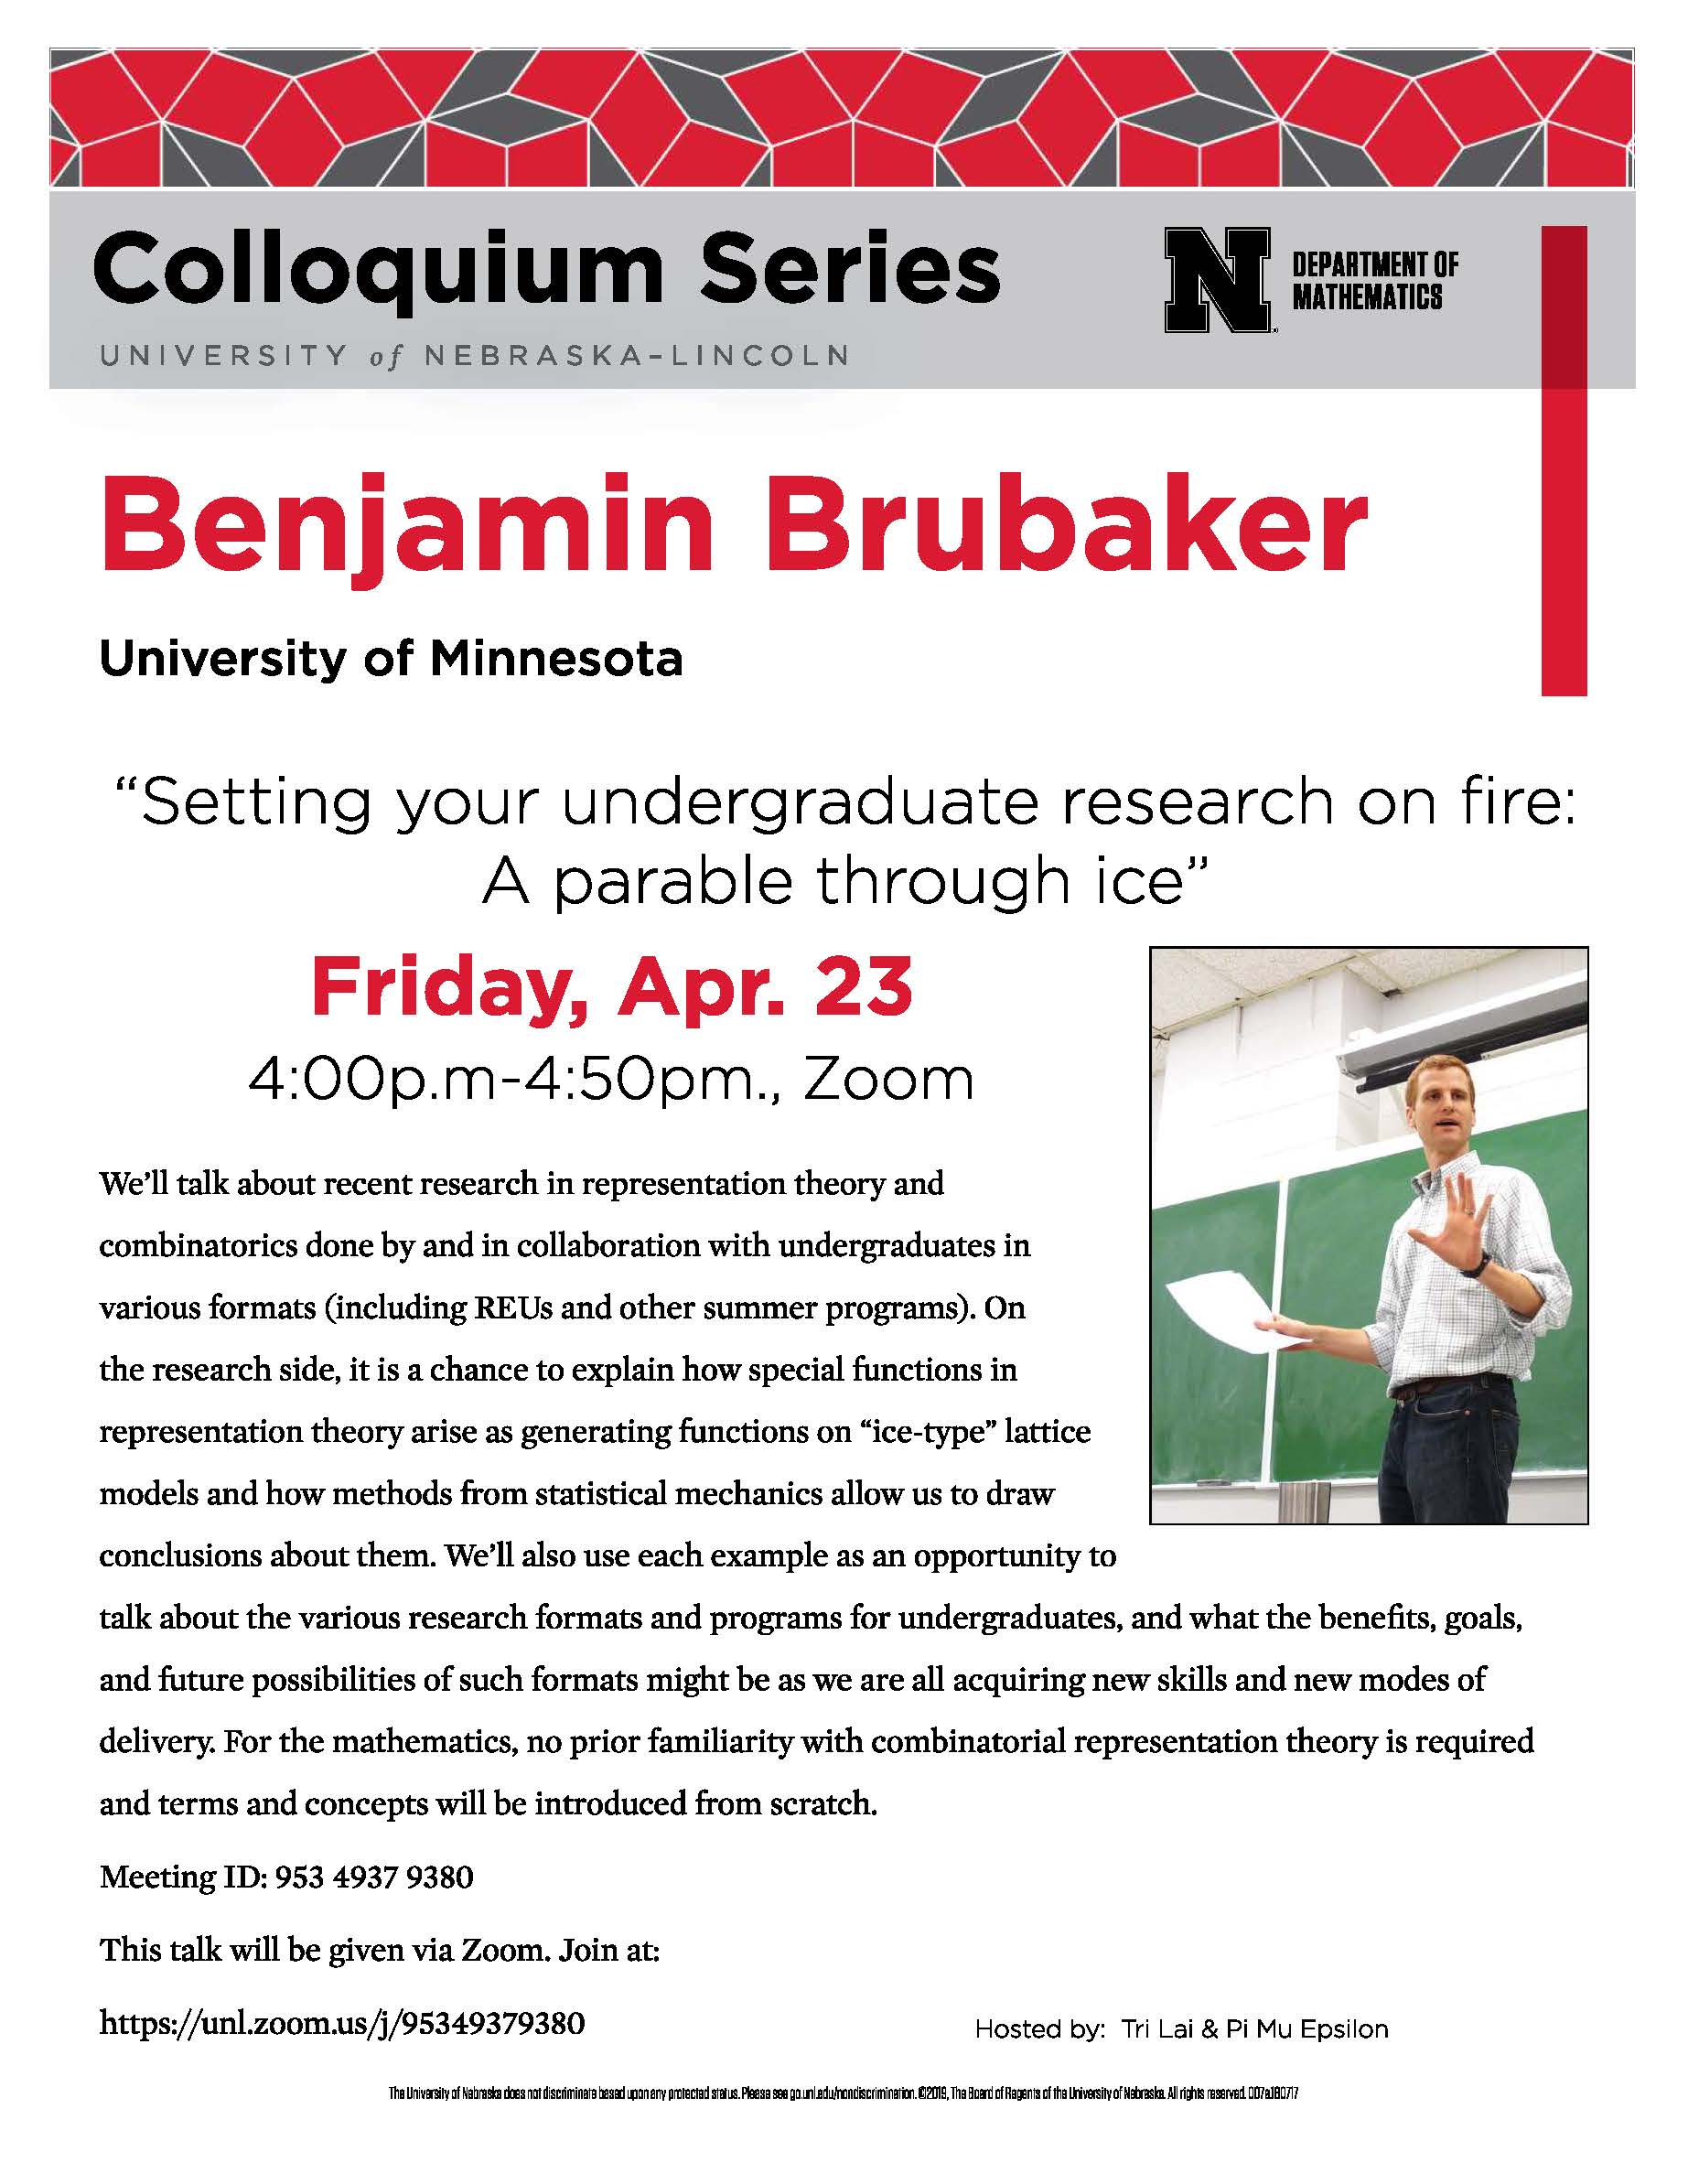 Ben Brubaker, University of Minnesota